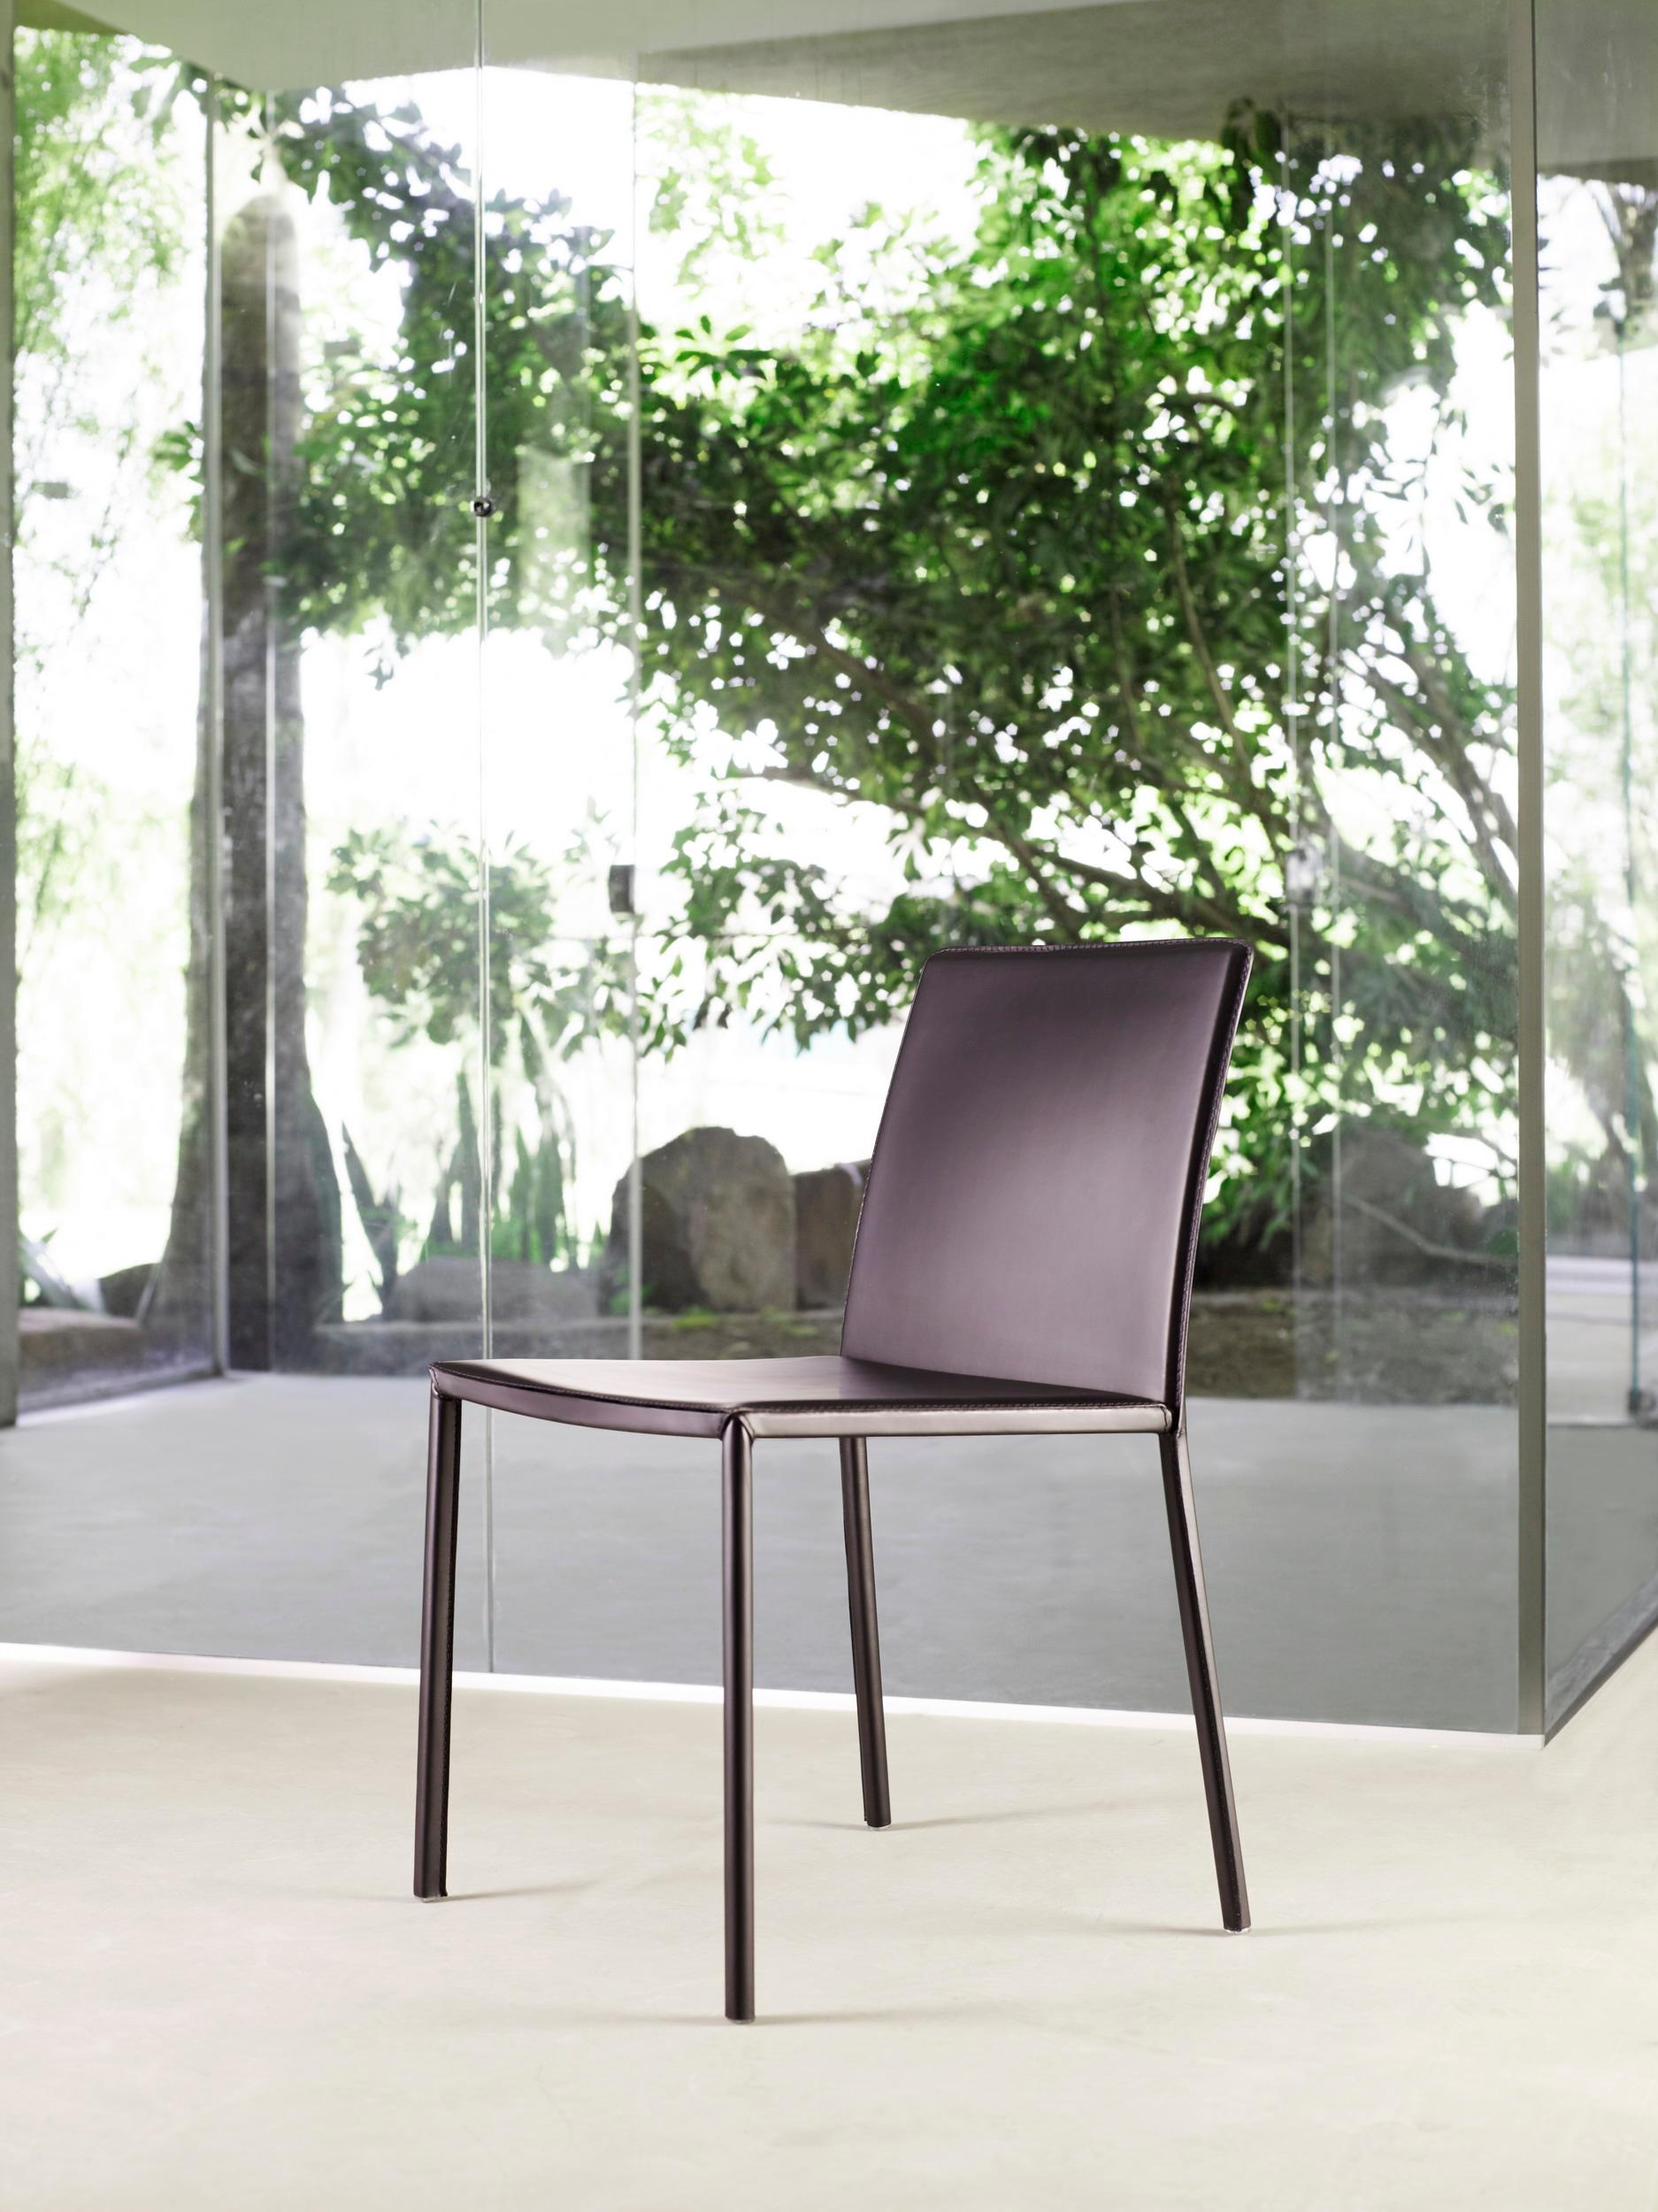 Smart Chair von Doimo Brasil
Abmessungen: B 52 x T 57 x H 81 cm 
MATERIALIEN: Metall, überzogen mit rekonstituiertem Leder.

Mit der Absicht, guten Geschmack und Persönlichkeit zu vermitteln, entschlüsselt Doimo Trends und folgt der Entwicklung des